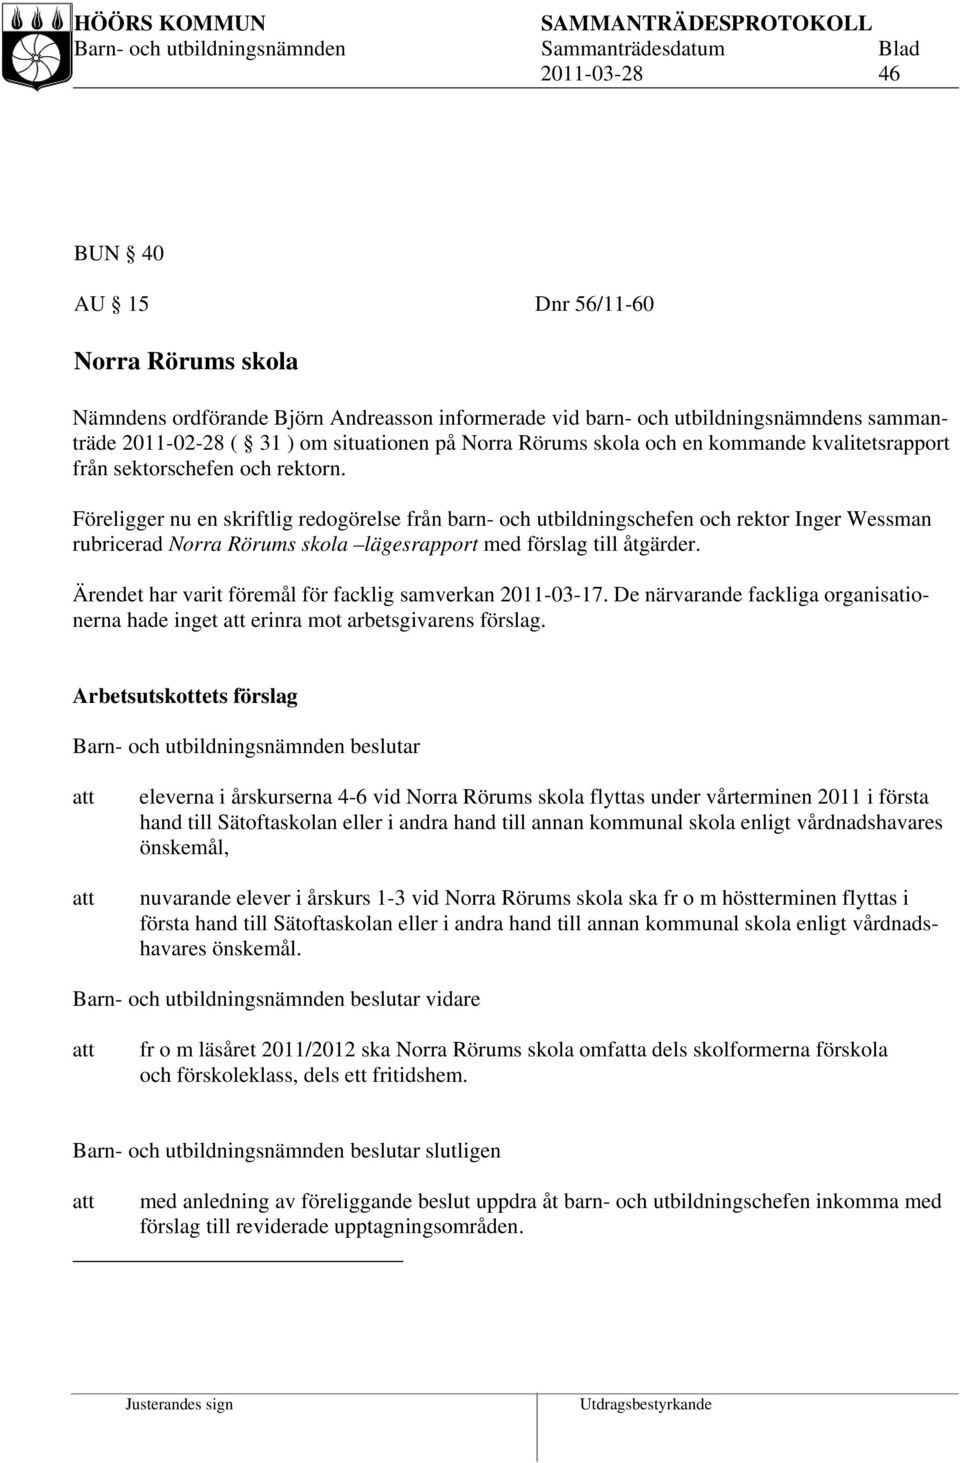 Föreligger nu en skriftlig redogörelse från barn- och utbildningschefen och rektor Inger Wessman rubricerad Norra Rörums skola lägesrapport med förslag till åtgärder.